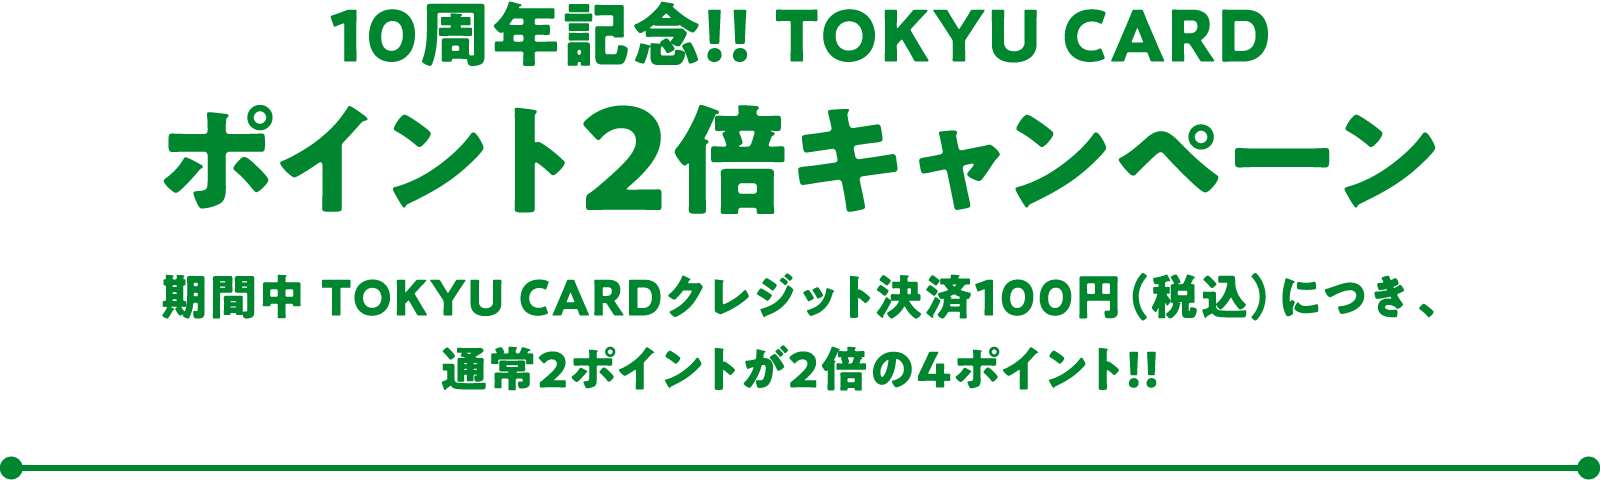 10周年記念!! TOKYU CARD ポイント2倍キャンペーン 期間中 TOKYU CARDクレジット決済100円(税込)につき、通常2ポイントが2倍の4ポイント!!